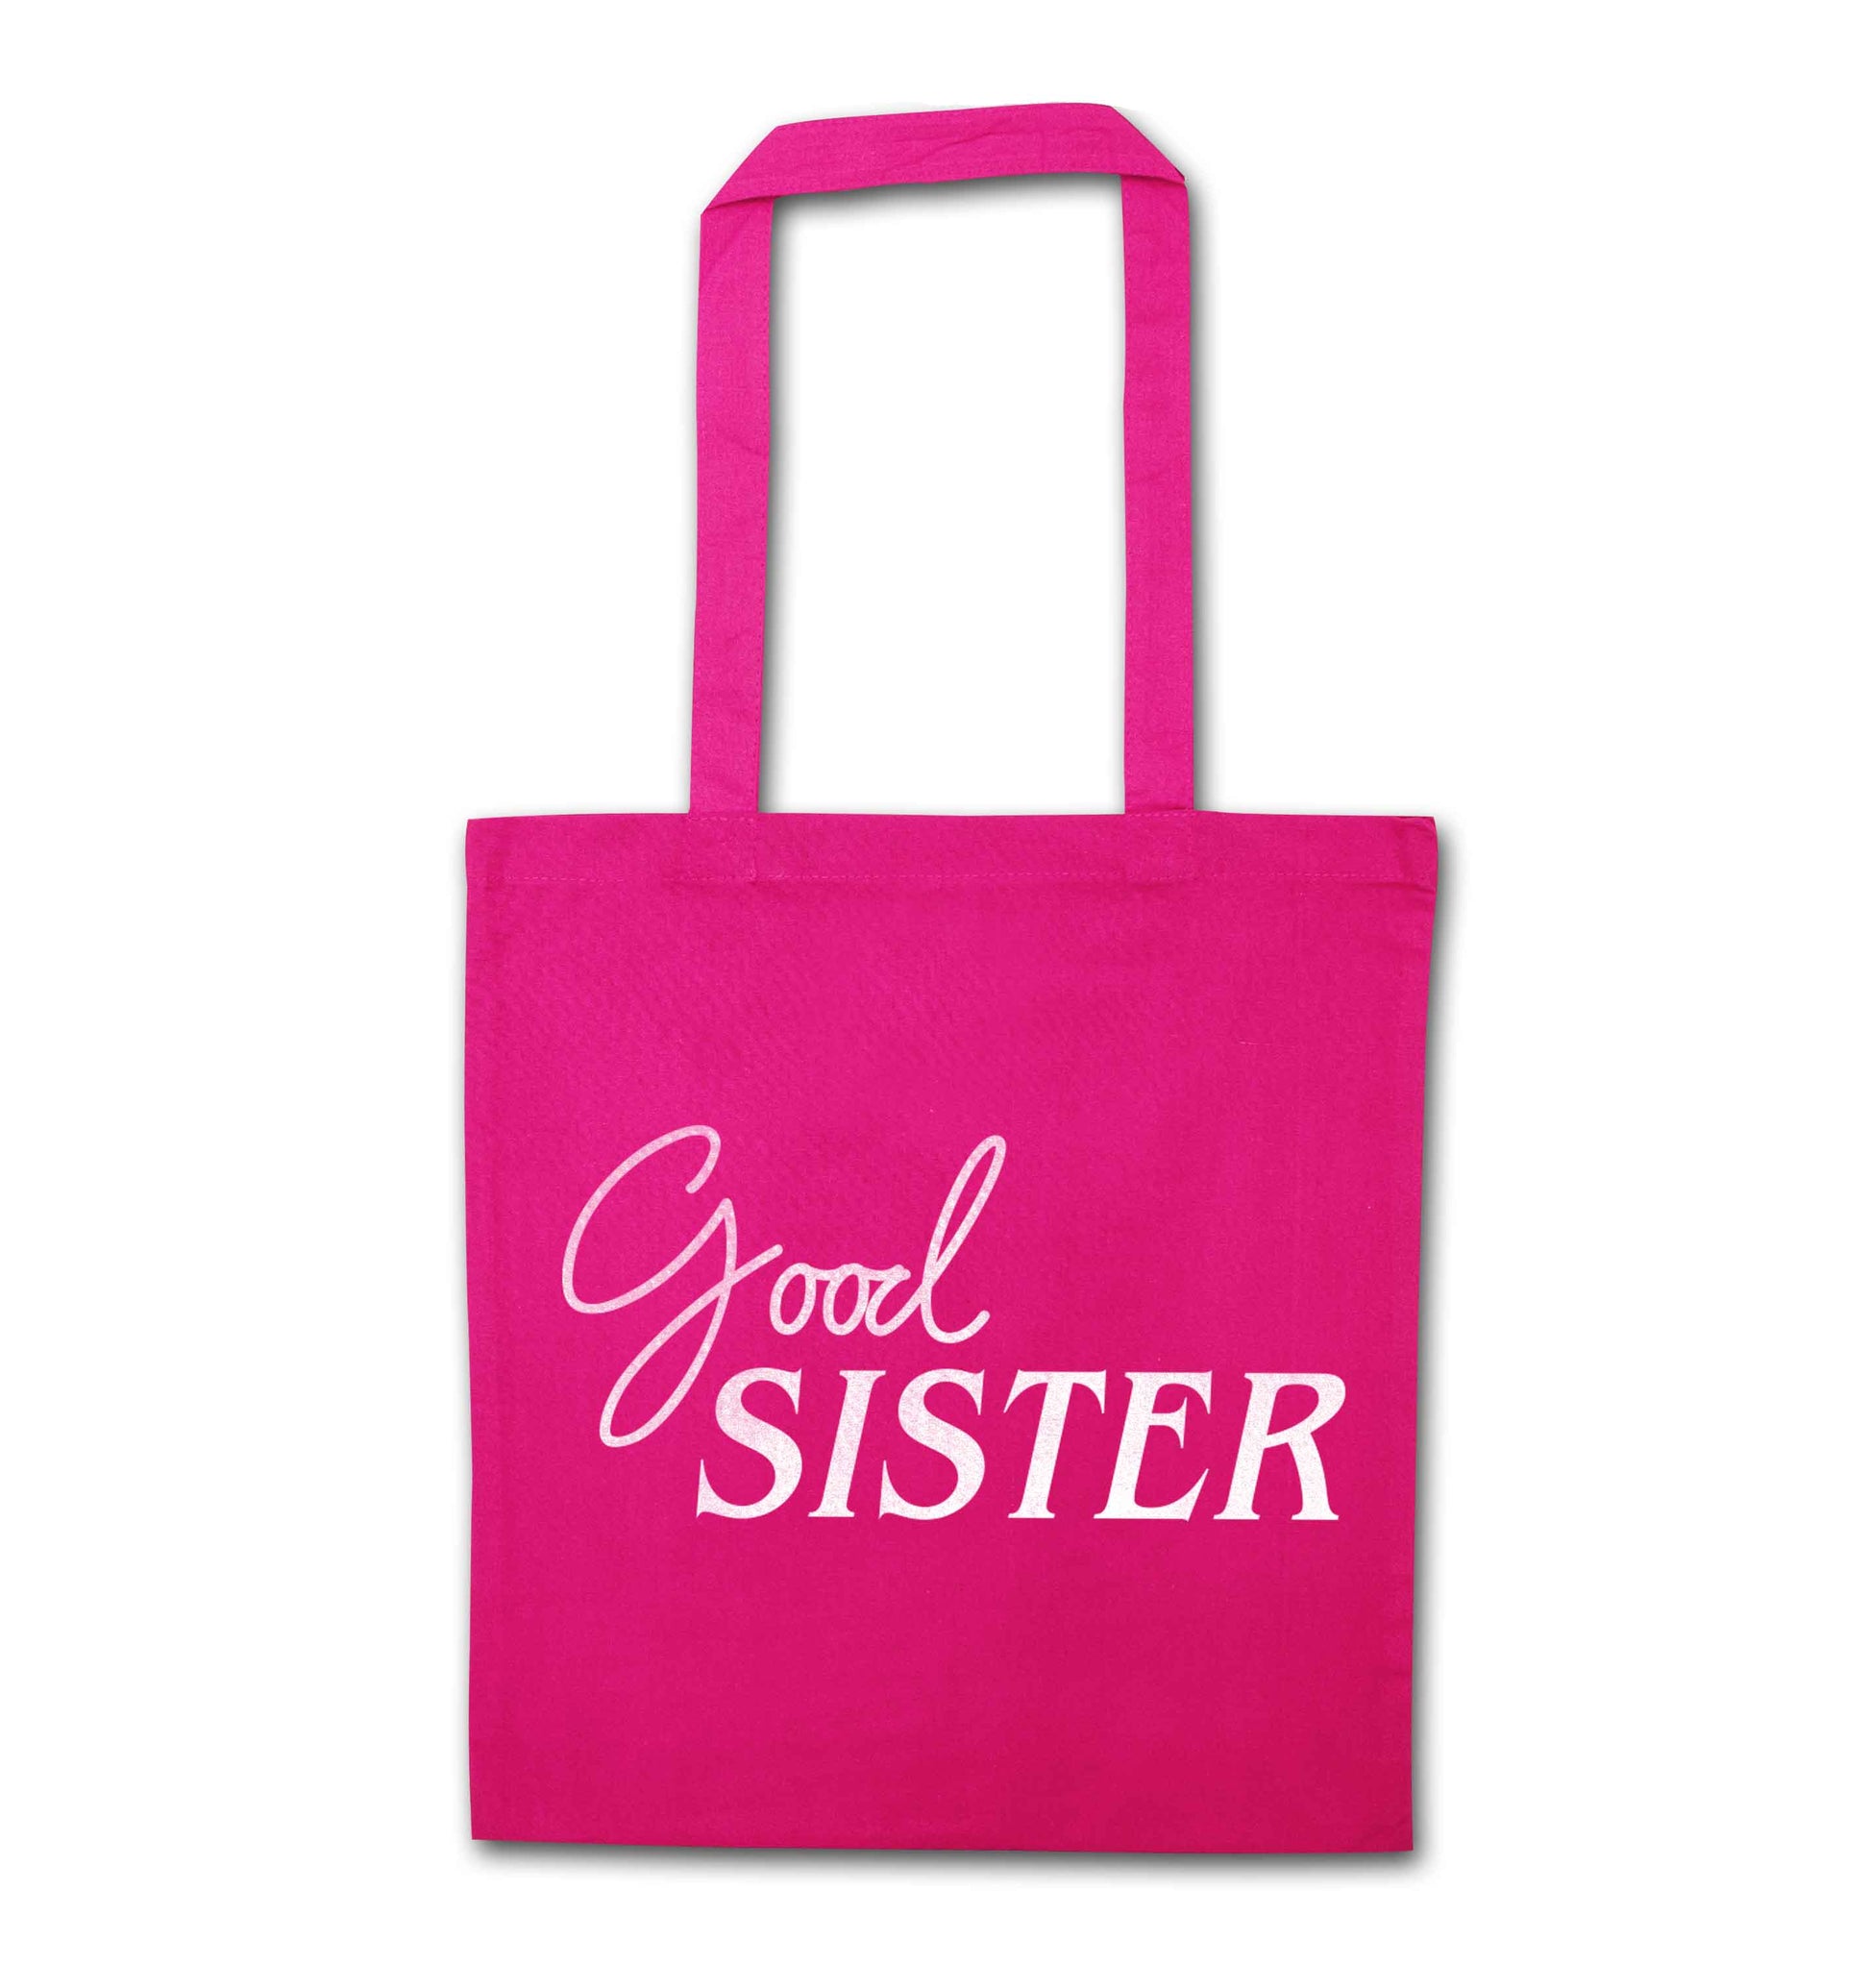 Good sister pink tote bag